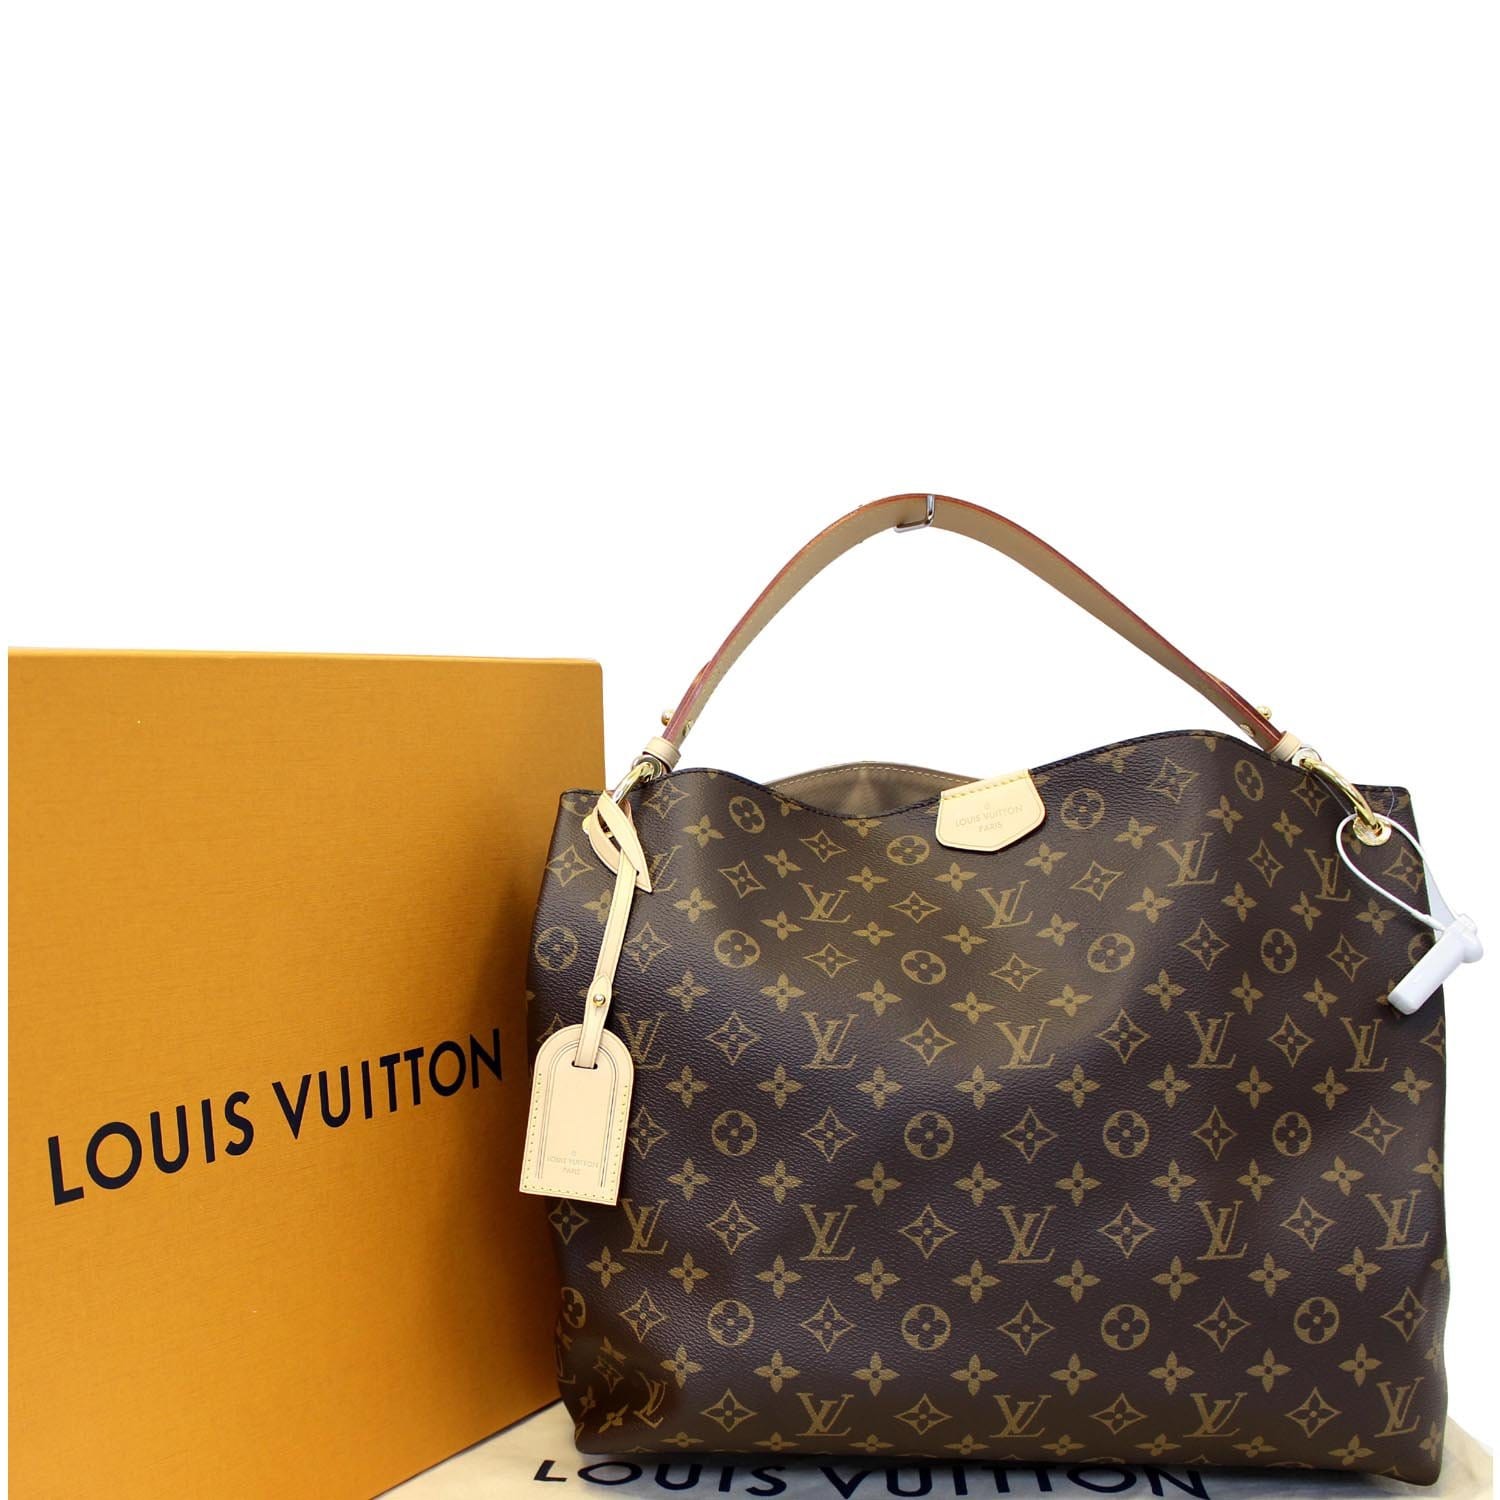 Louis Vuitton Graceful Mm Review